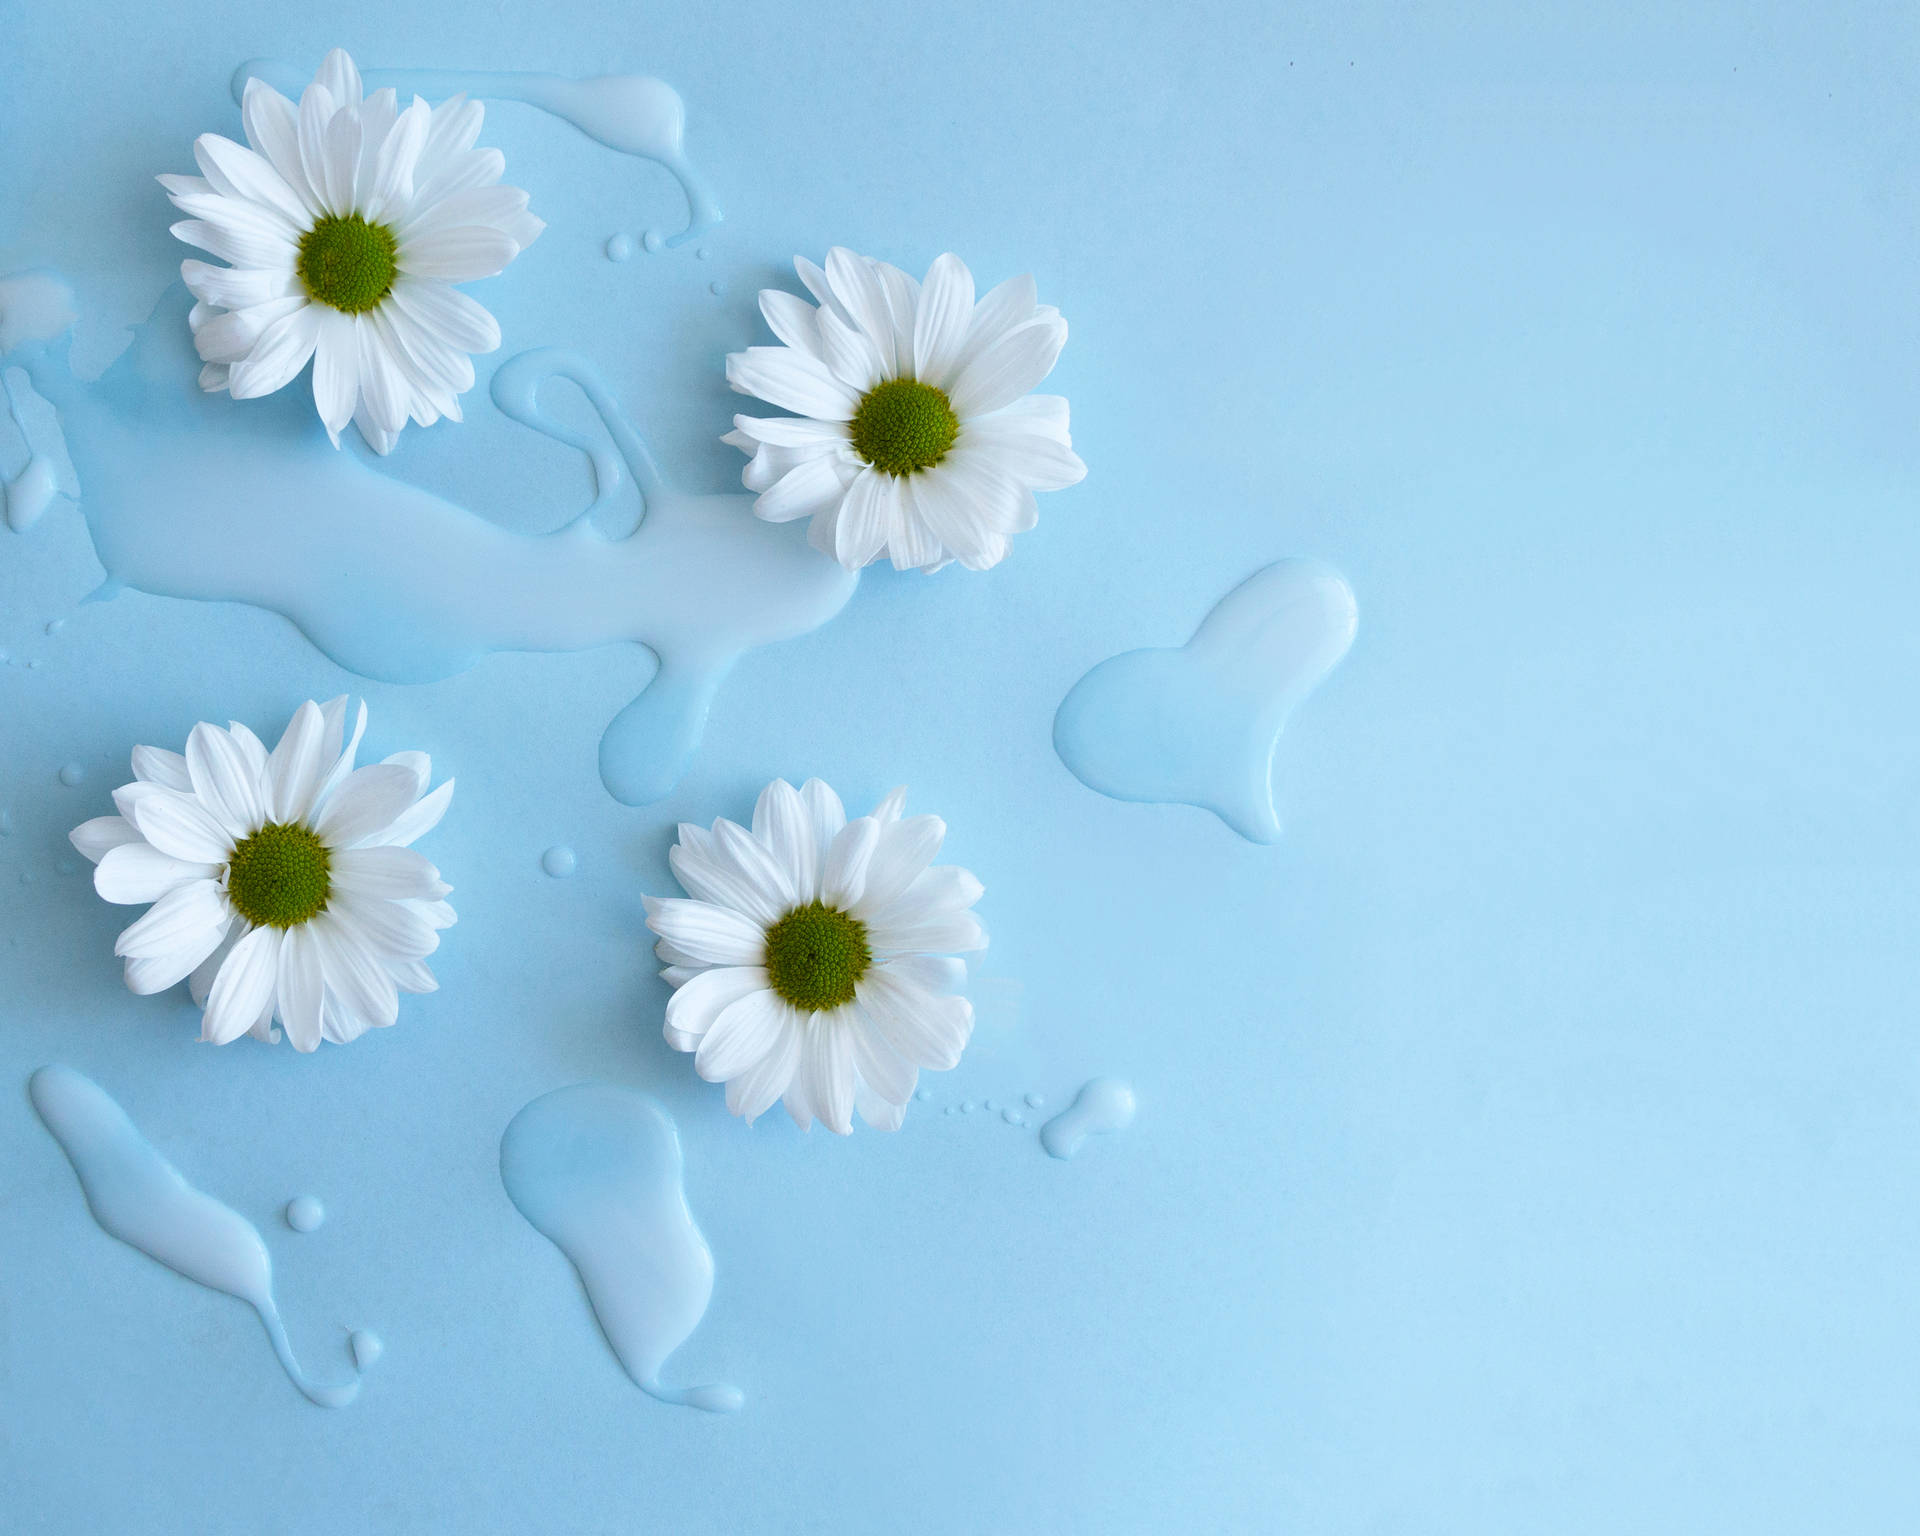 Aesthetic Flower White Daisy Wallpaper